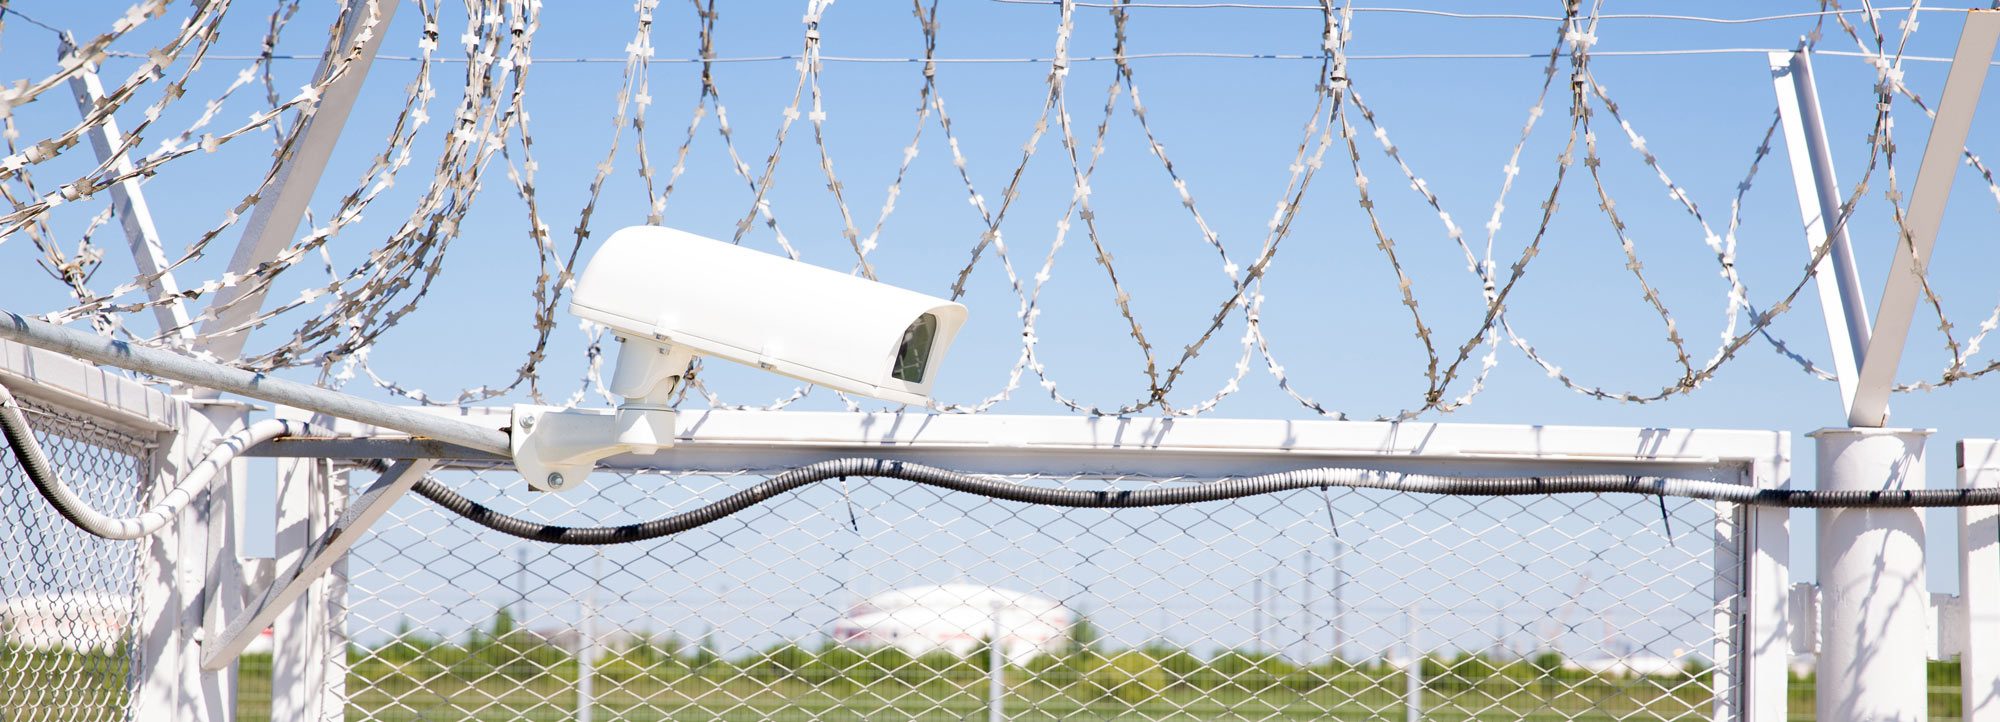 Perimeter Schutz Tor Zaun Schranke Stacheldraht Videoüberwachung Schutz Sicherheit Außenhaut Absicherung